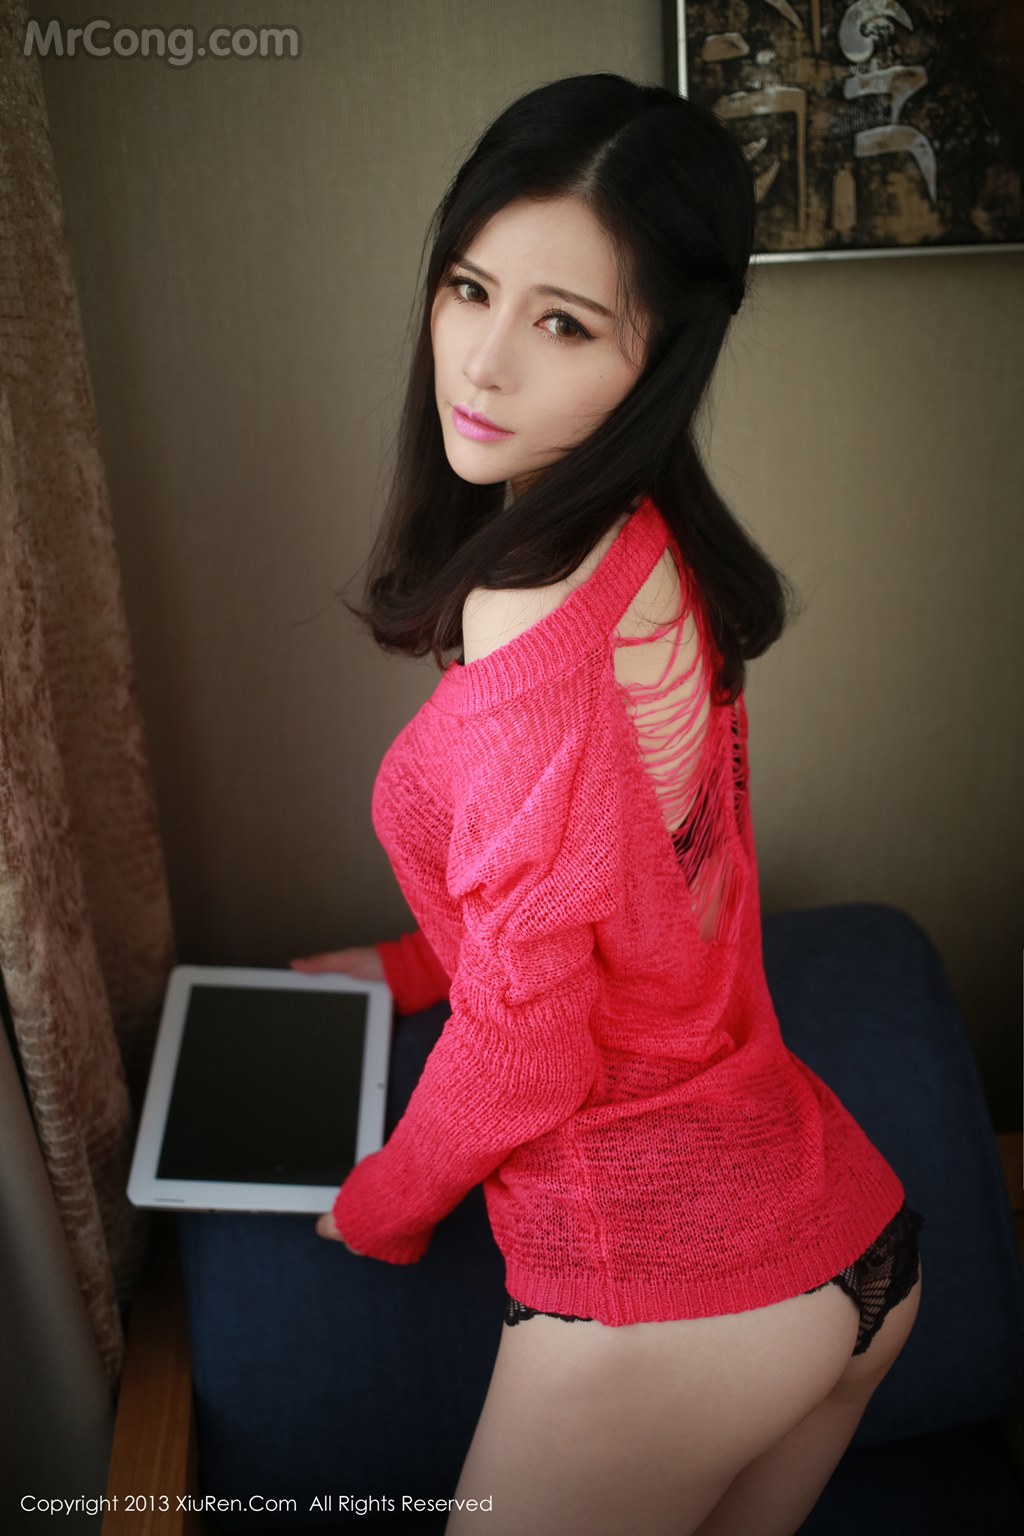 XIUREN No.047: Model Nancy (小 姿) (49 photos)